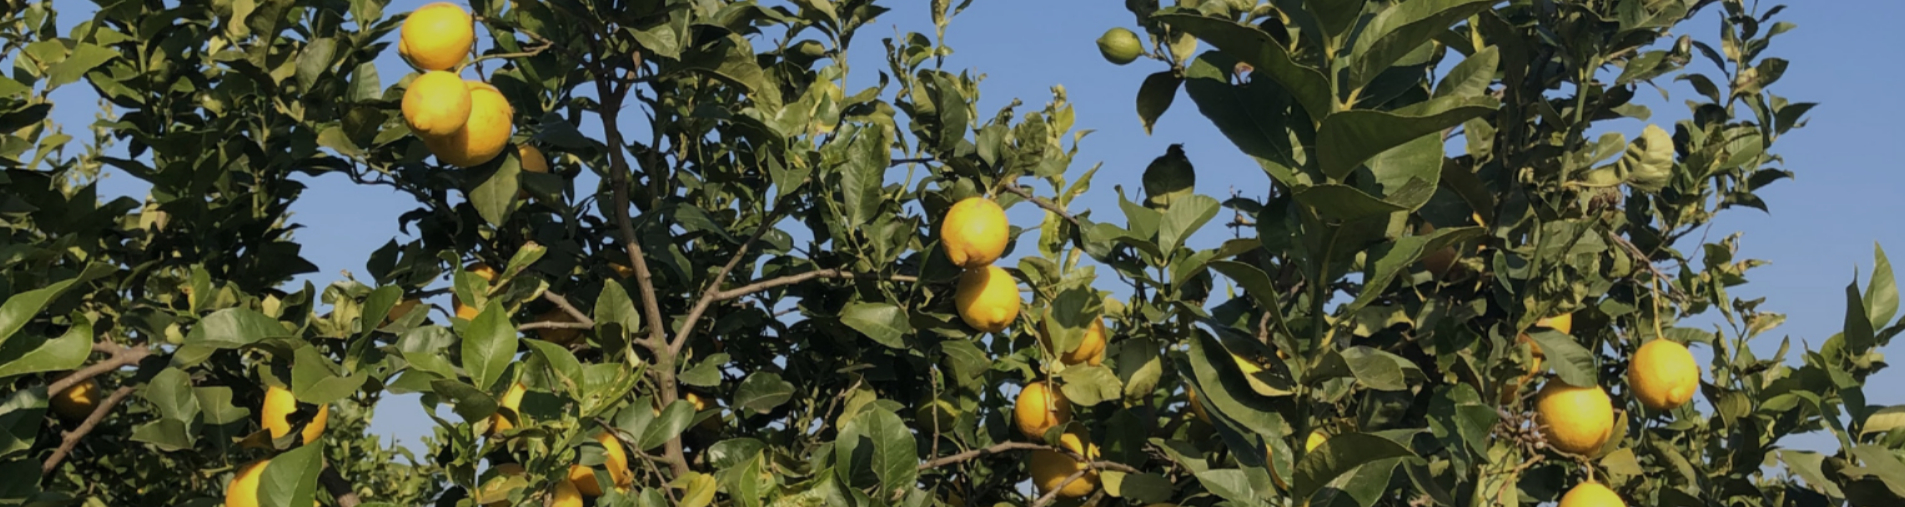 Our organic lemon from Spain - Citrus Limon (L.) Burm. F.